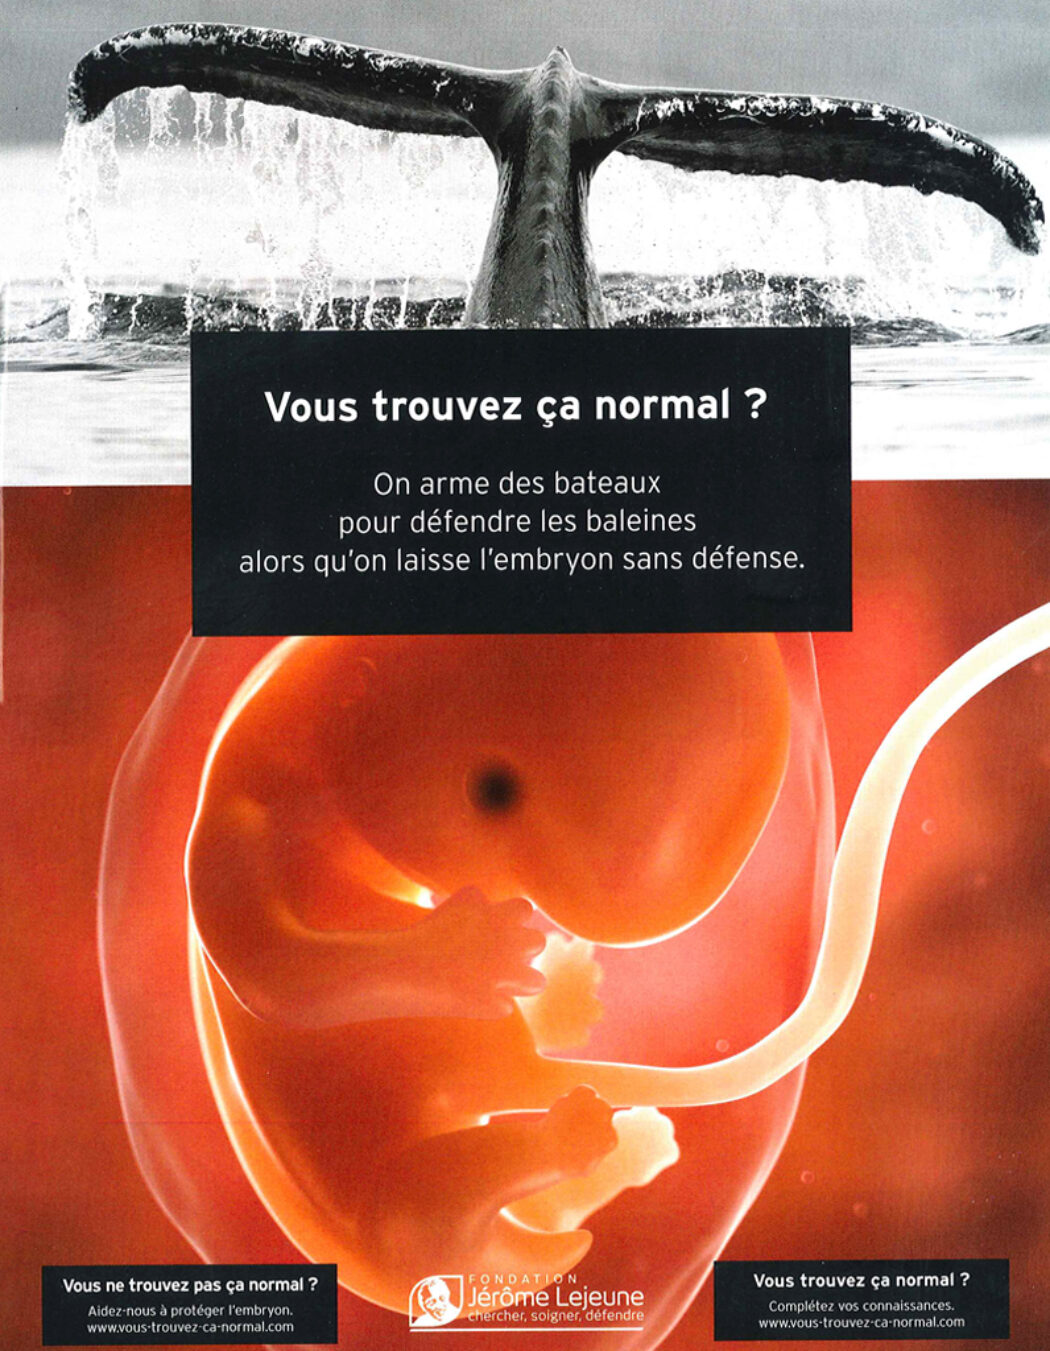 “La réduction du nombre de rendez-vous obligatoires et la possibilité d’avorter chez soi ont permis de maintenir les IVG”